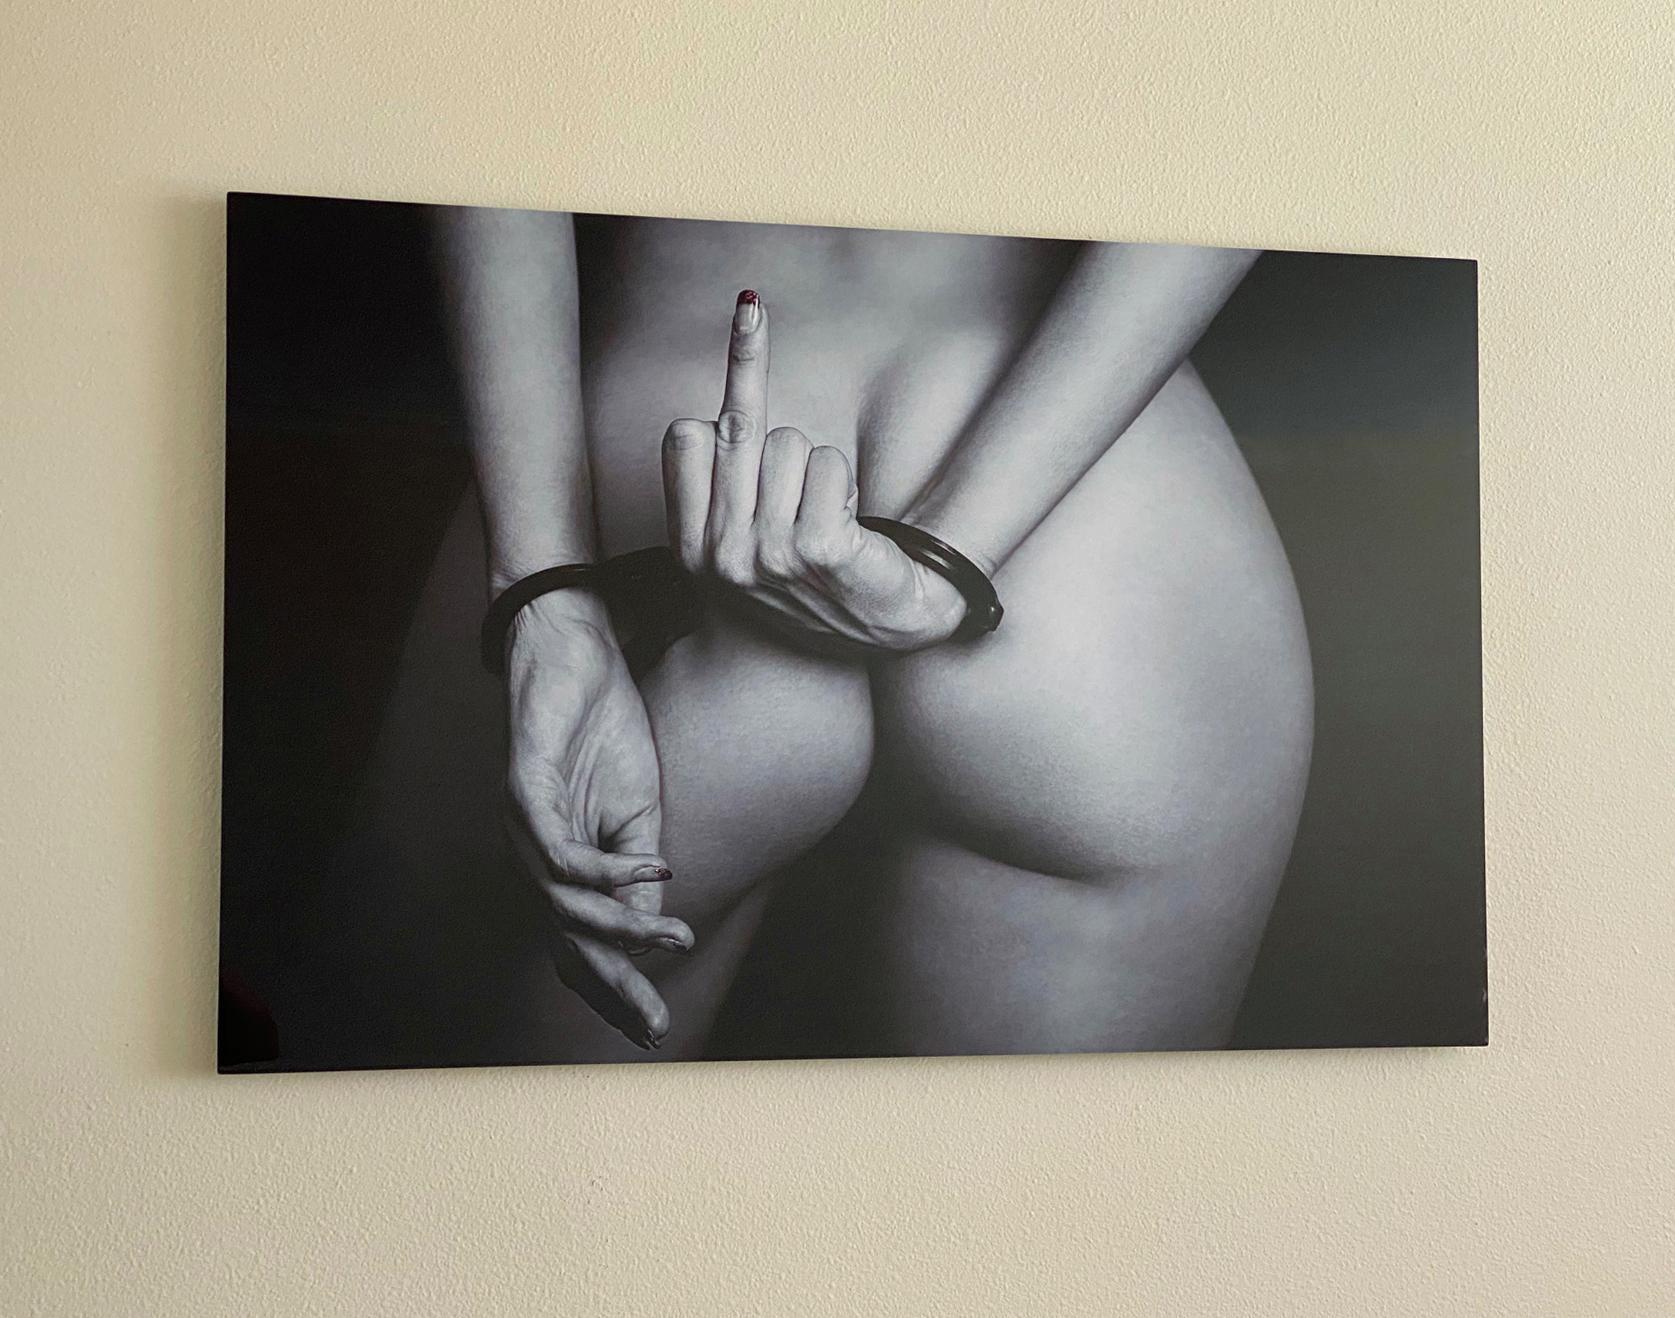 Eine Schwarz-Weiß-Fotografie, die das Gesäß einer perfekten Frau zeigt und ihre gefesselten Hände, die den Finger zeigen.

Original-Digitaldruck auf Aluminiumplatte, vom Künstler signiert.
Limitierte Auflage von 12 Stück, Druck Nr. 3
Das Kunstwerk